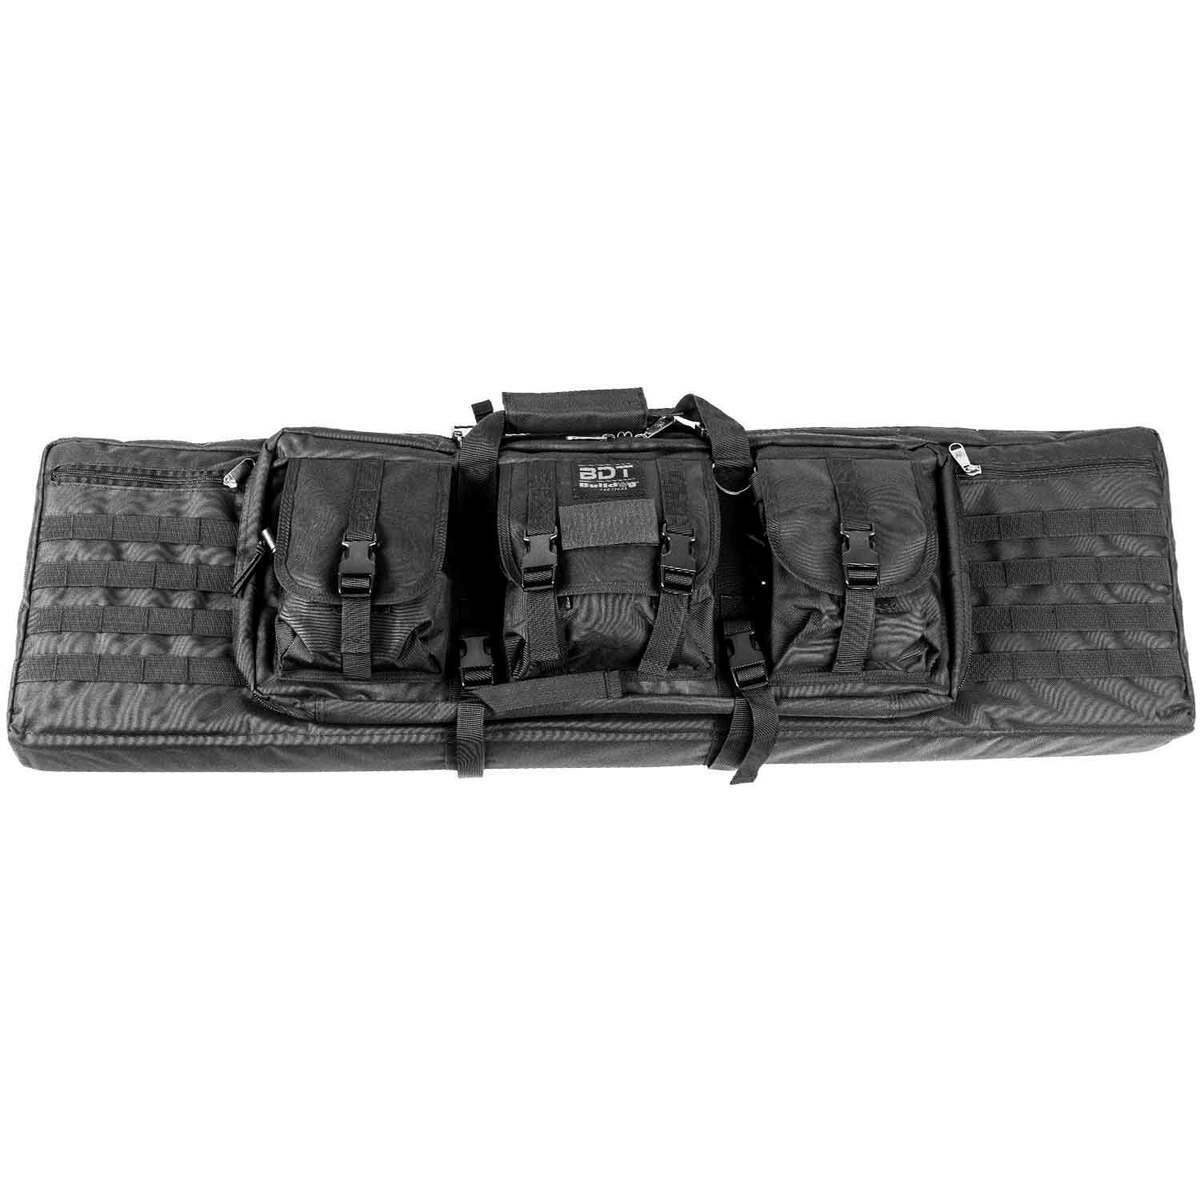 5.11 Tactical LV M4 20L Backpack - Black